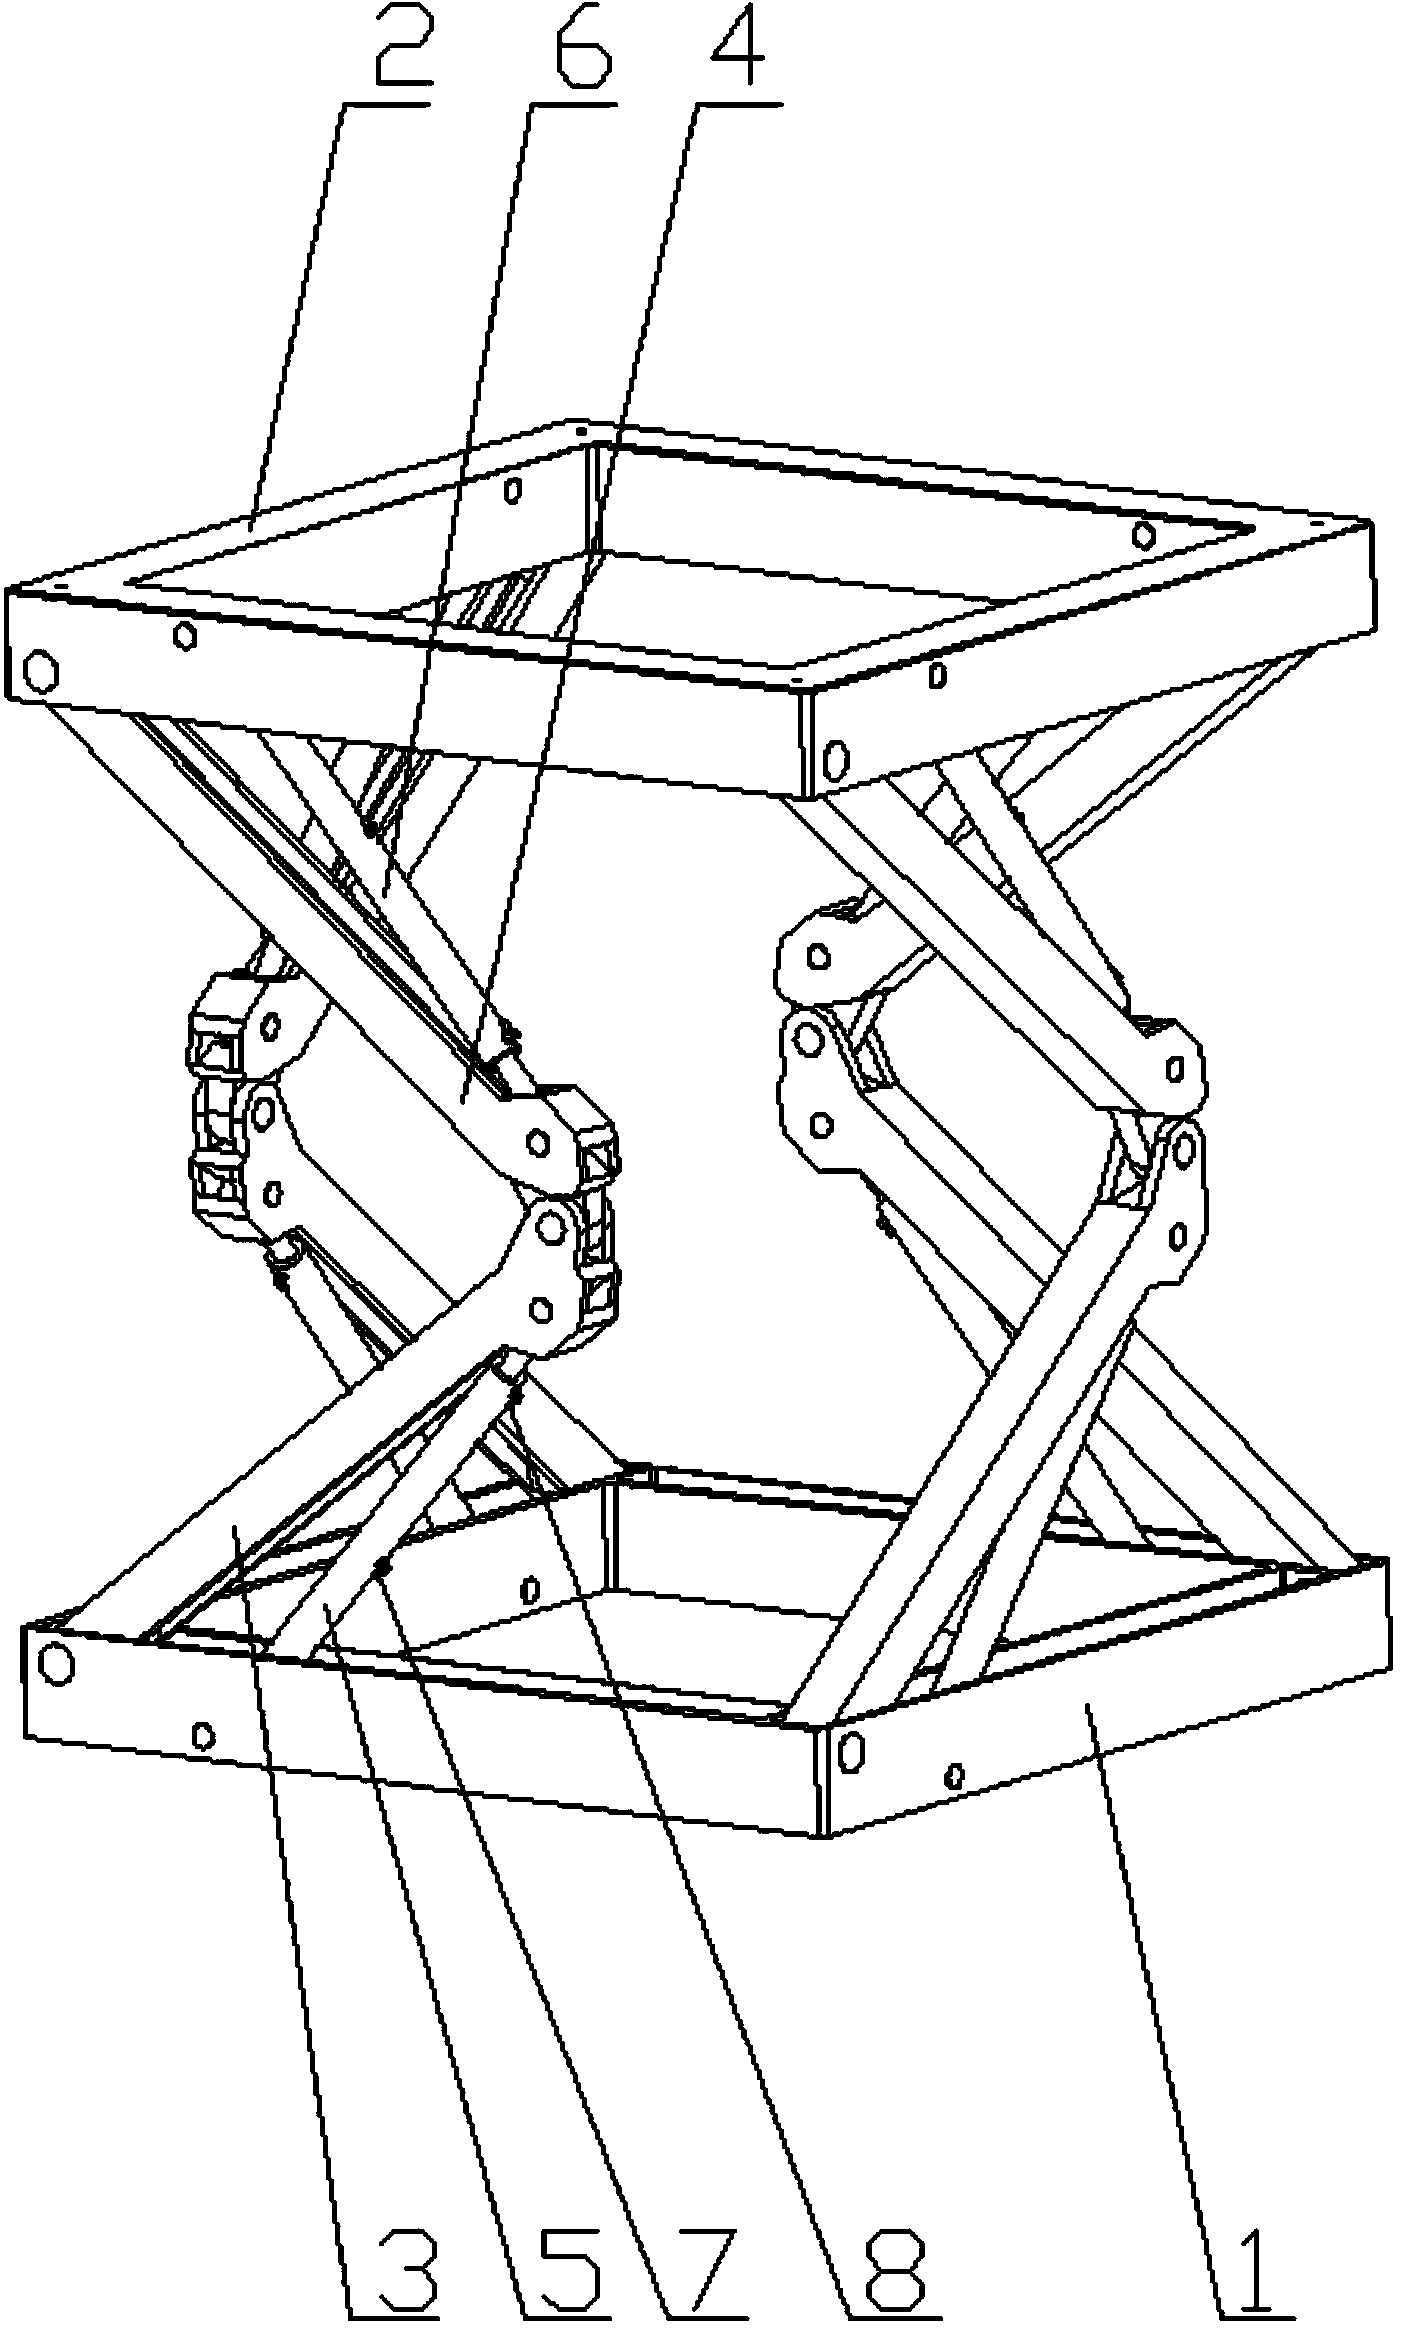 Foldable type hydraulic hoisting frame